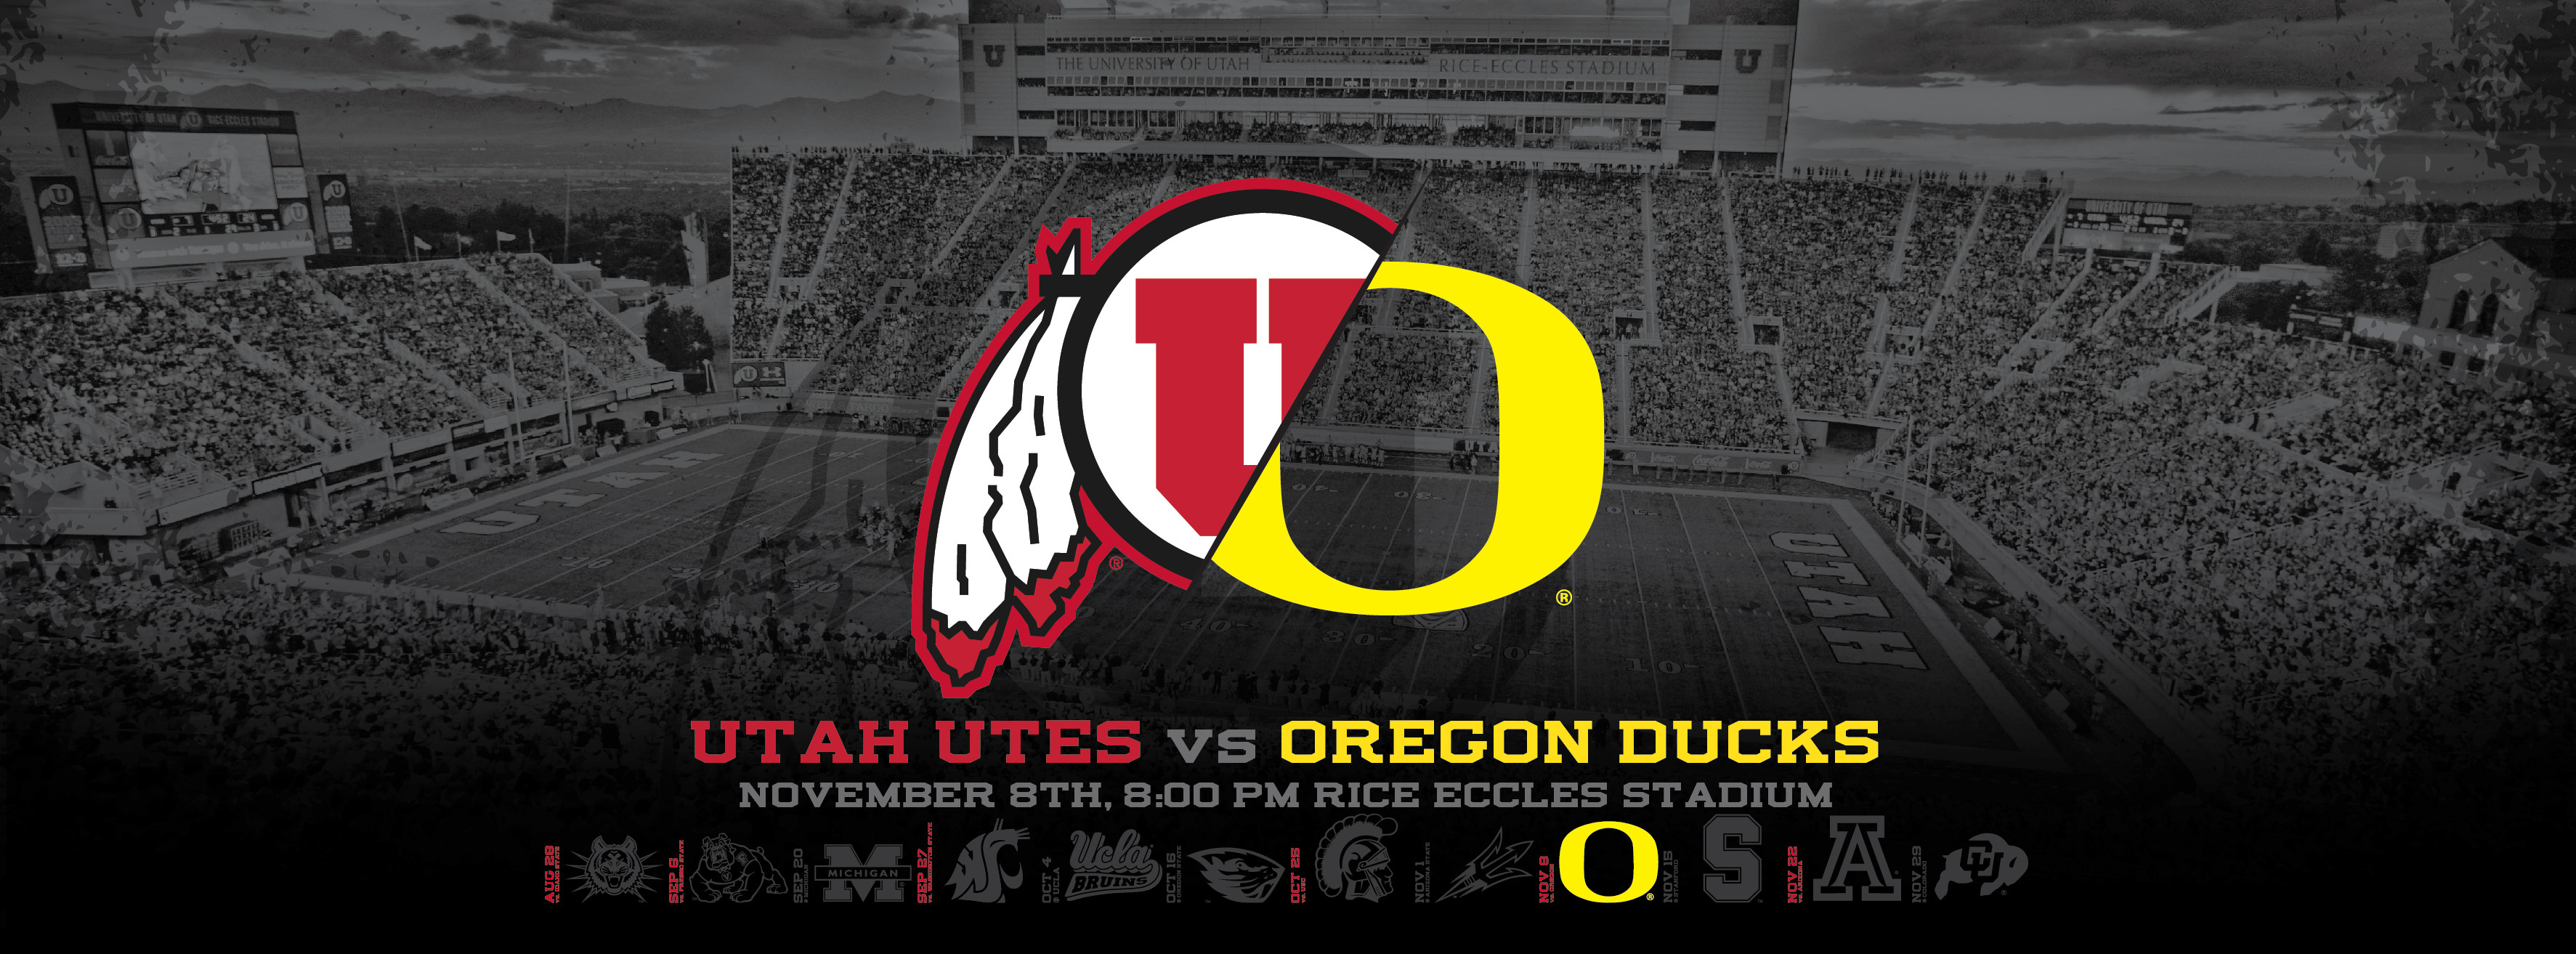 3546x1313 Utah Utes vs Oregon Ducks Wallpapers | Dahlelama